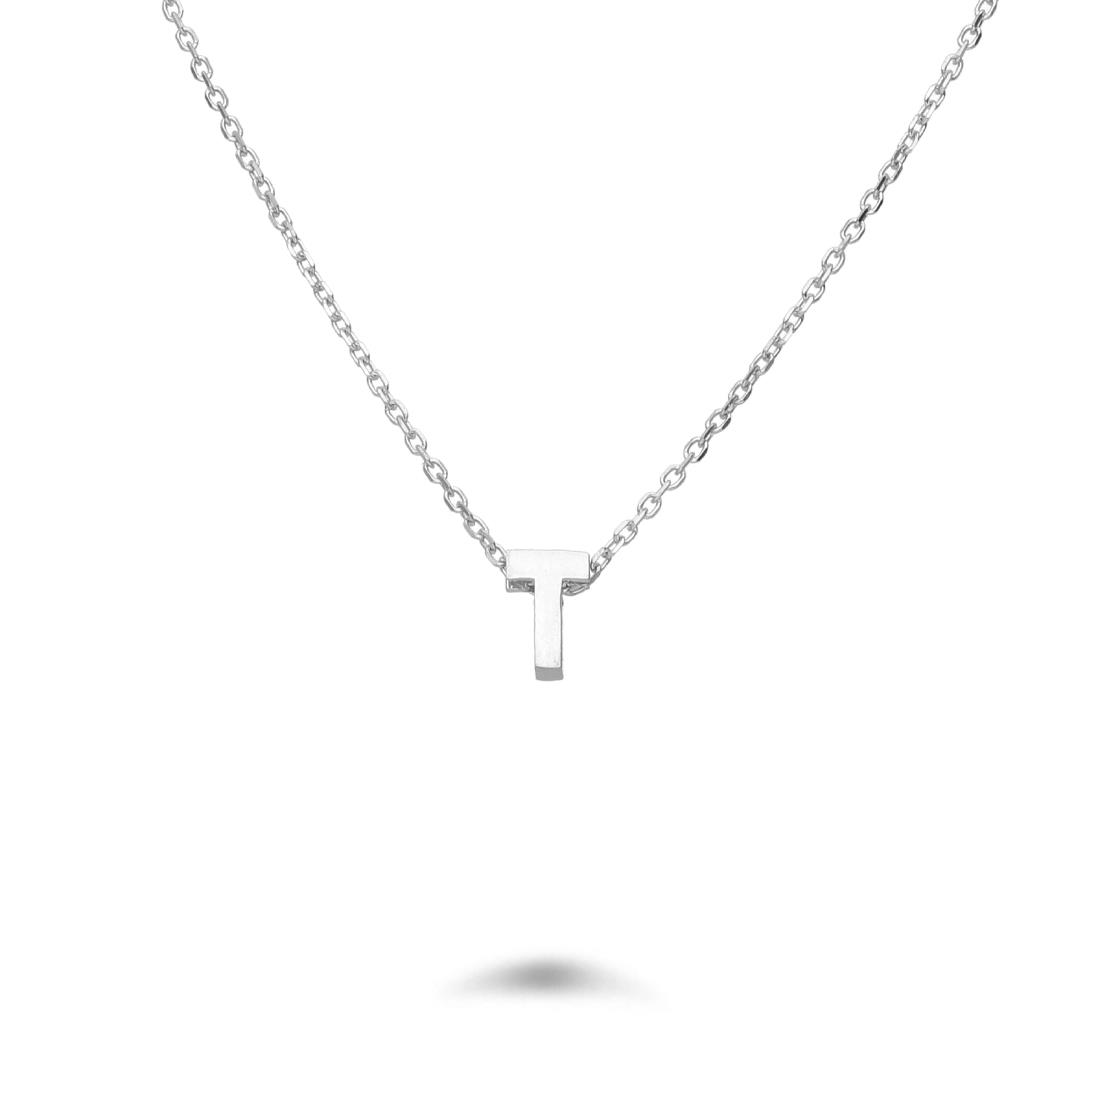 Rolò necklace in rhodium-plated silver with letter T - DESIDERI PREZIOSI